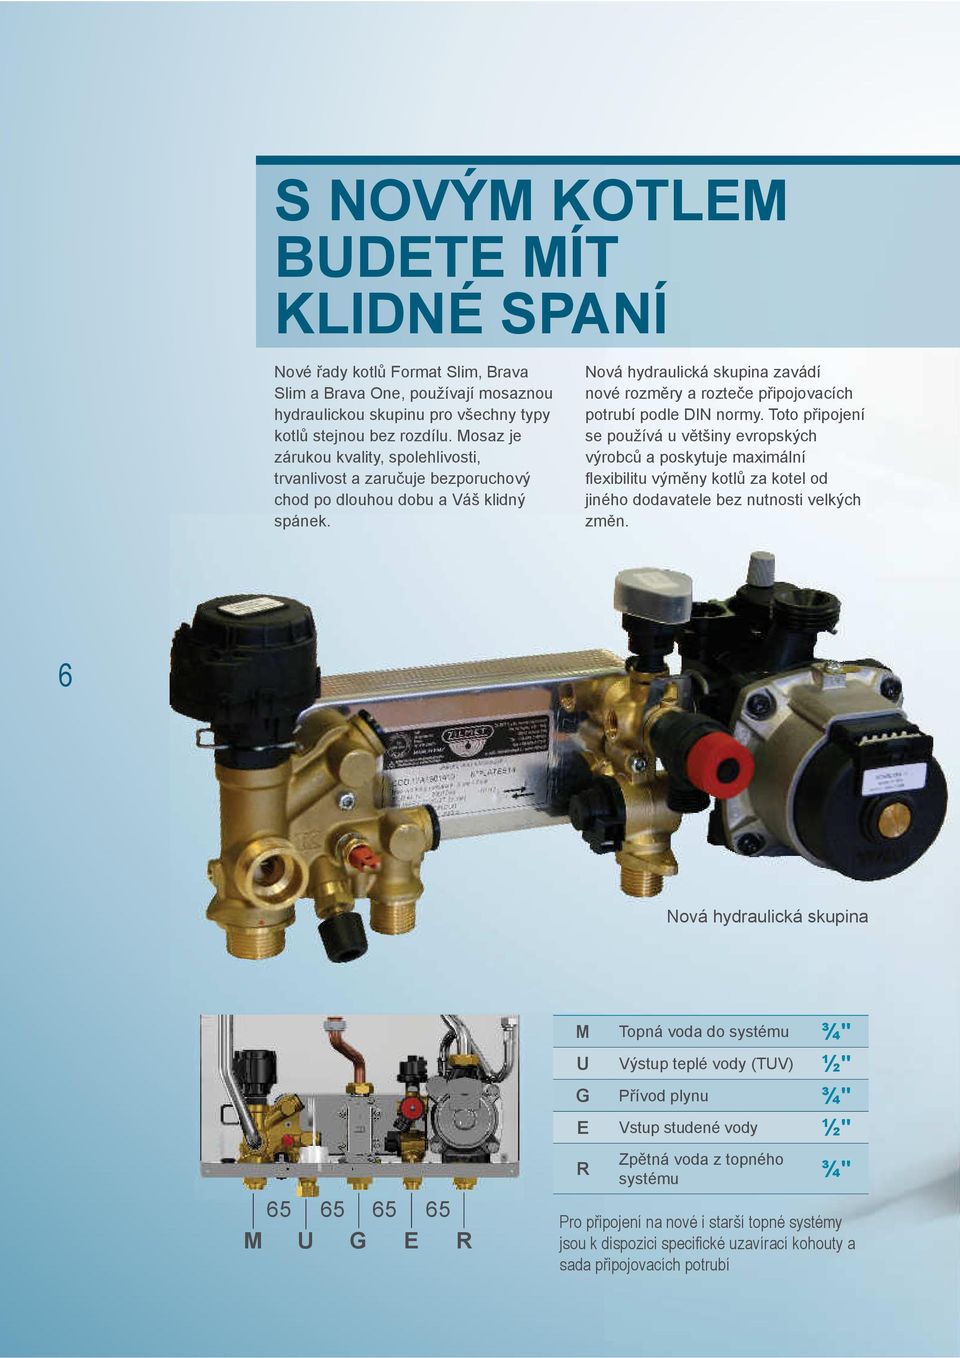 Nová hydraulická skupina zavádí nové rozměry a rozteče připojovacích potrubí podle DIN normy.